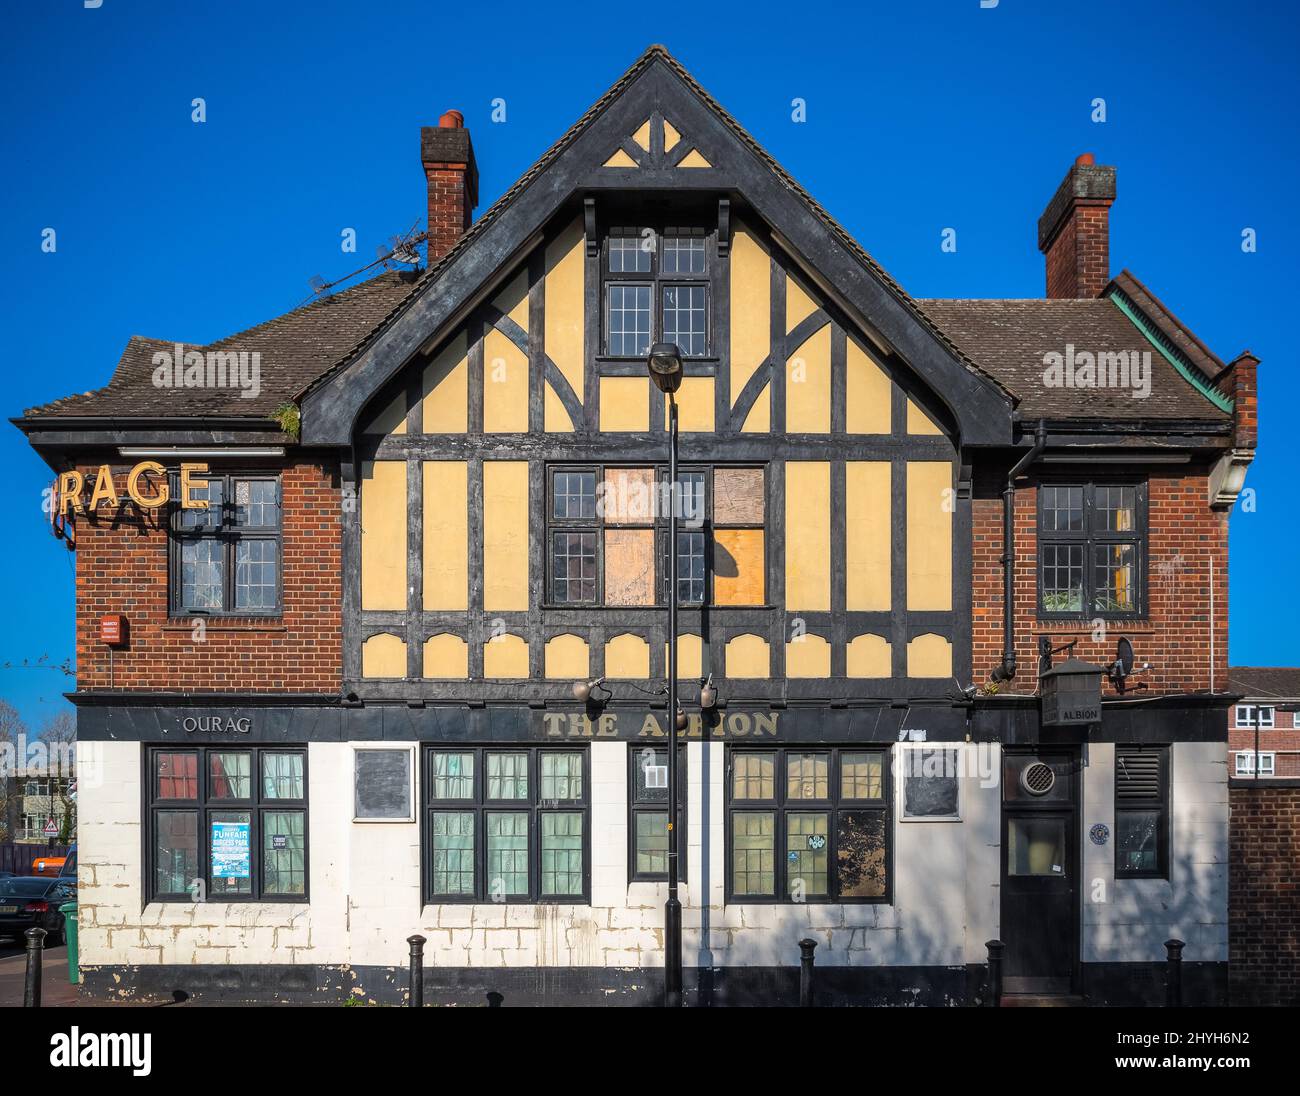 Londra, UK - 19 aprile 2019 - l'esterno di un pub inglese in stile mock Tudor intorno al Canada Water Foto Stock